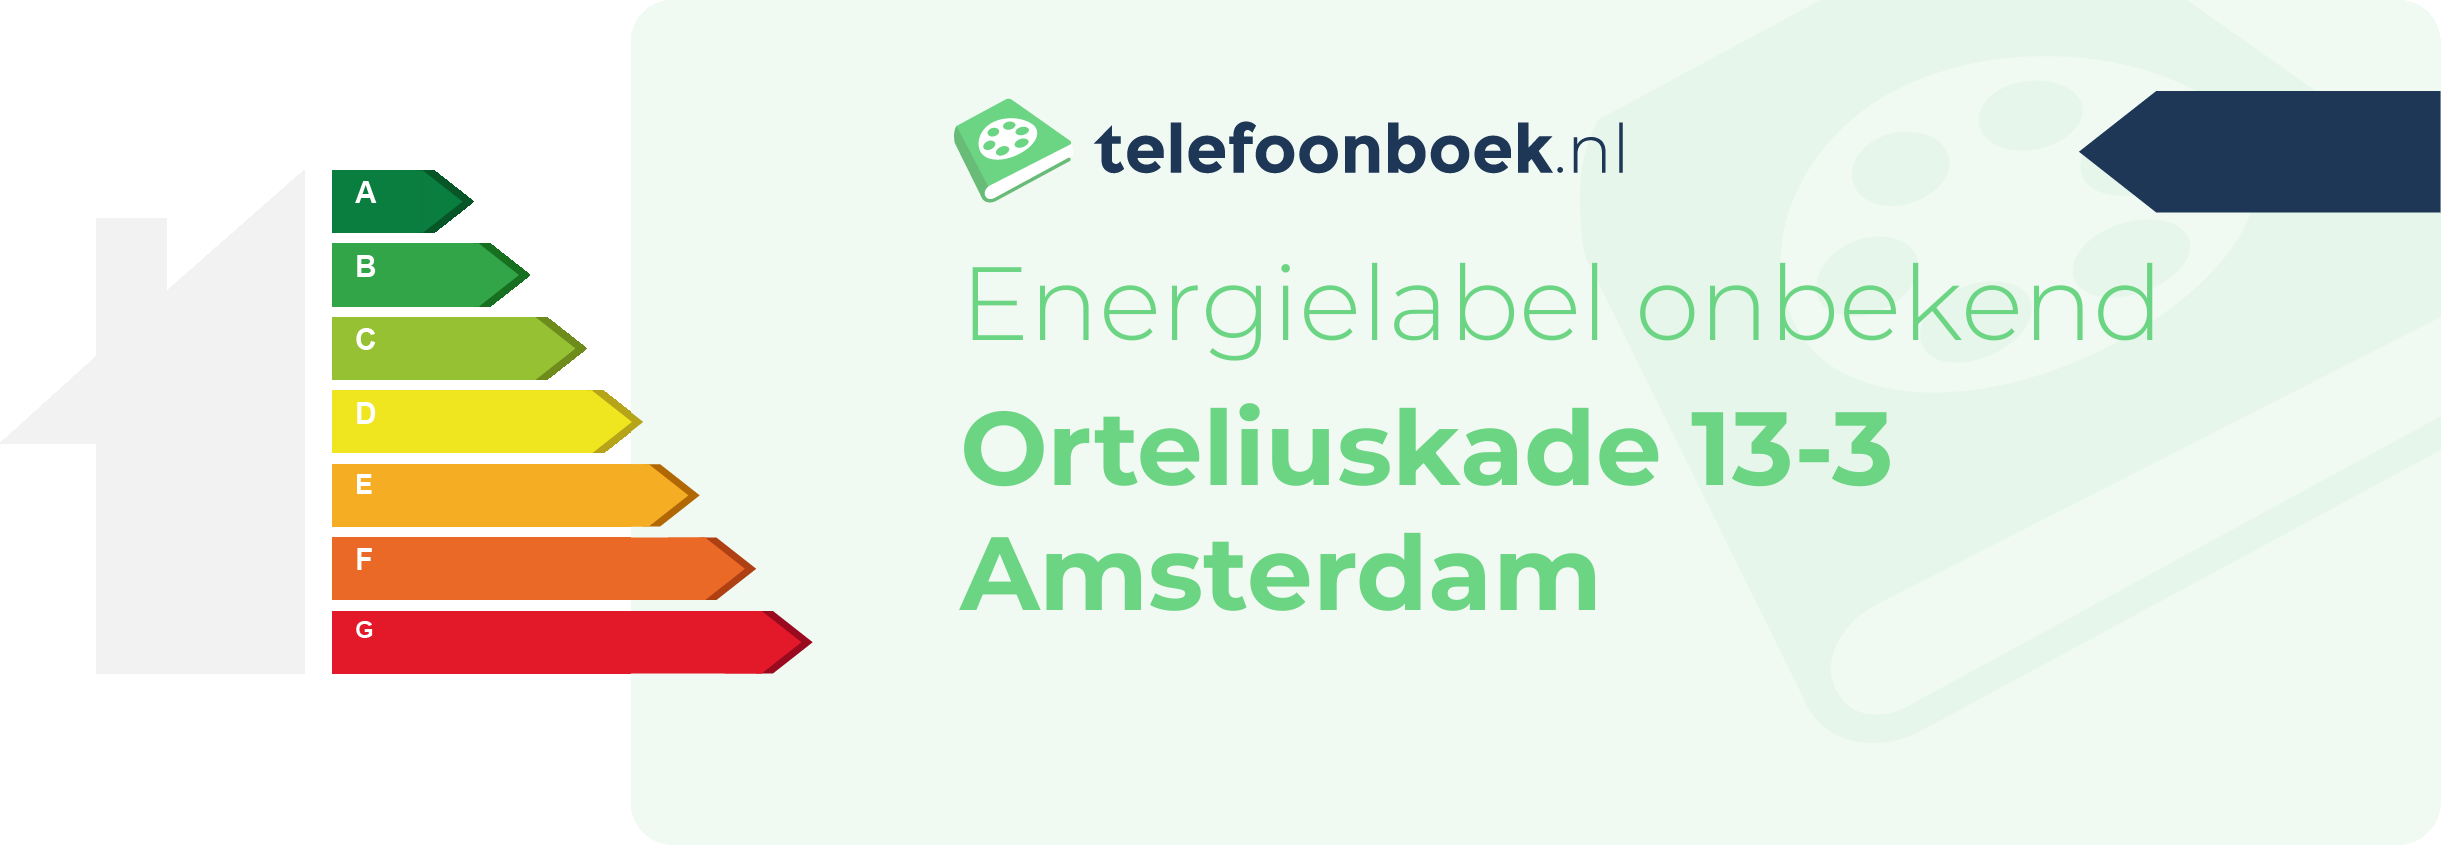 Energielabel Orteliuskade 13-3 Amsterdam